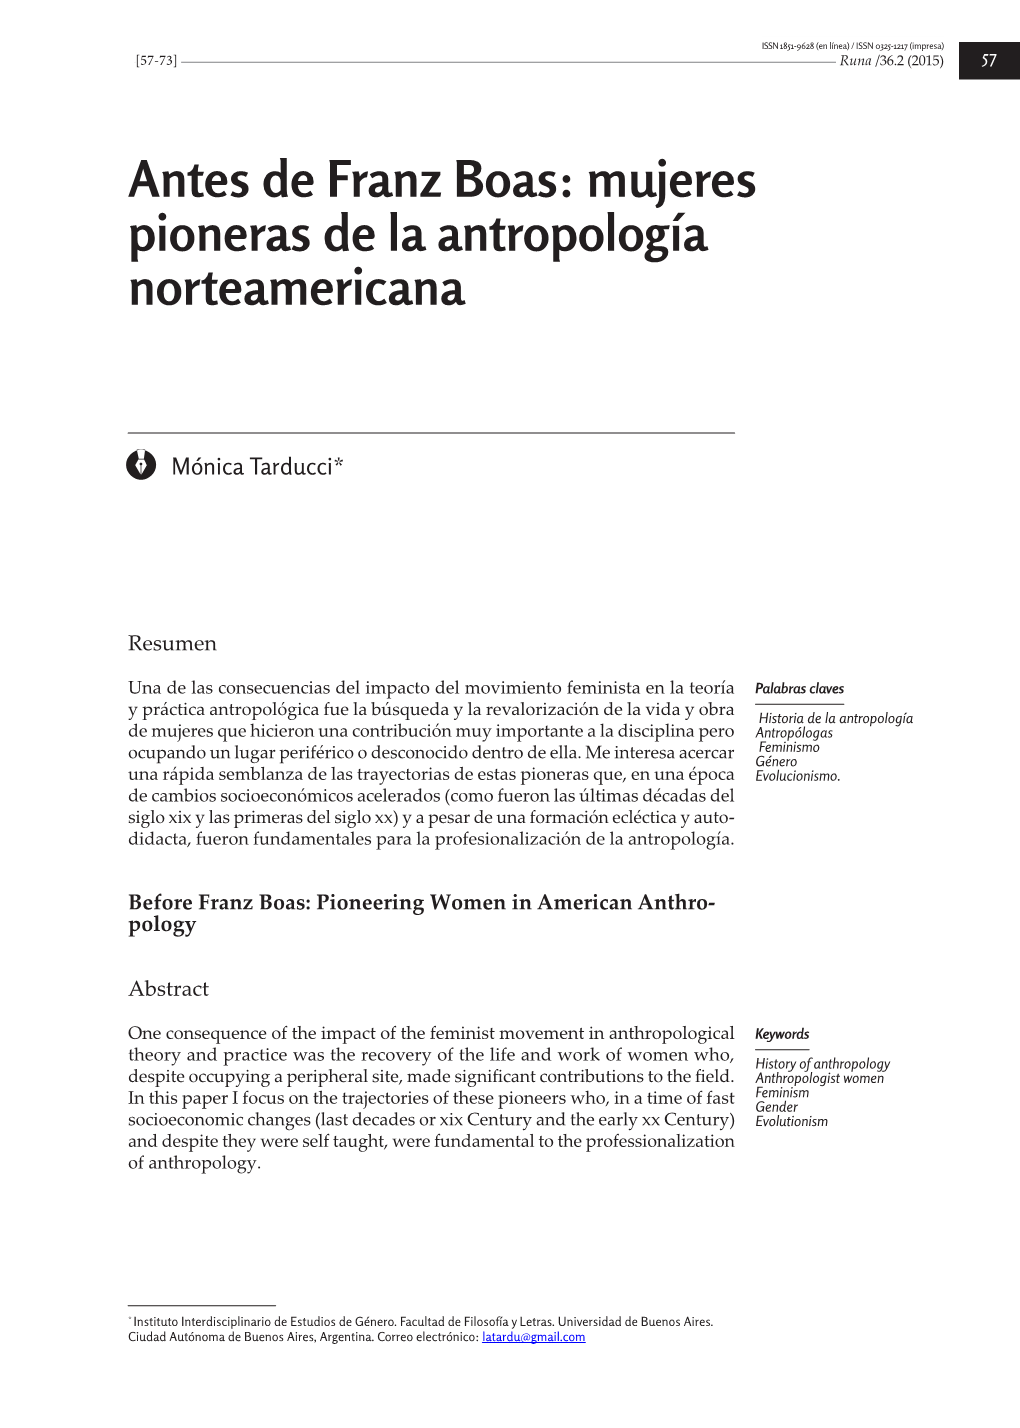 Antes De Franz Boas: Mujeres Pioneras De La Antropología Norteamericana